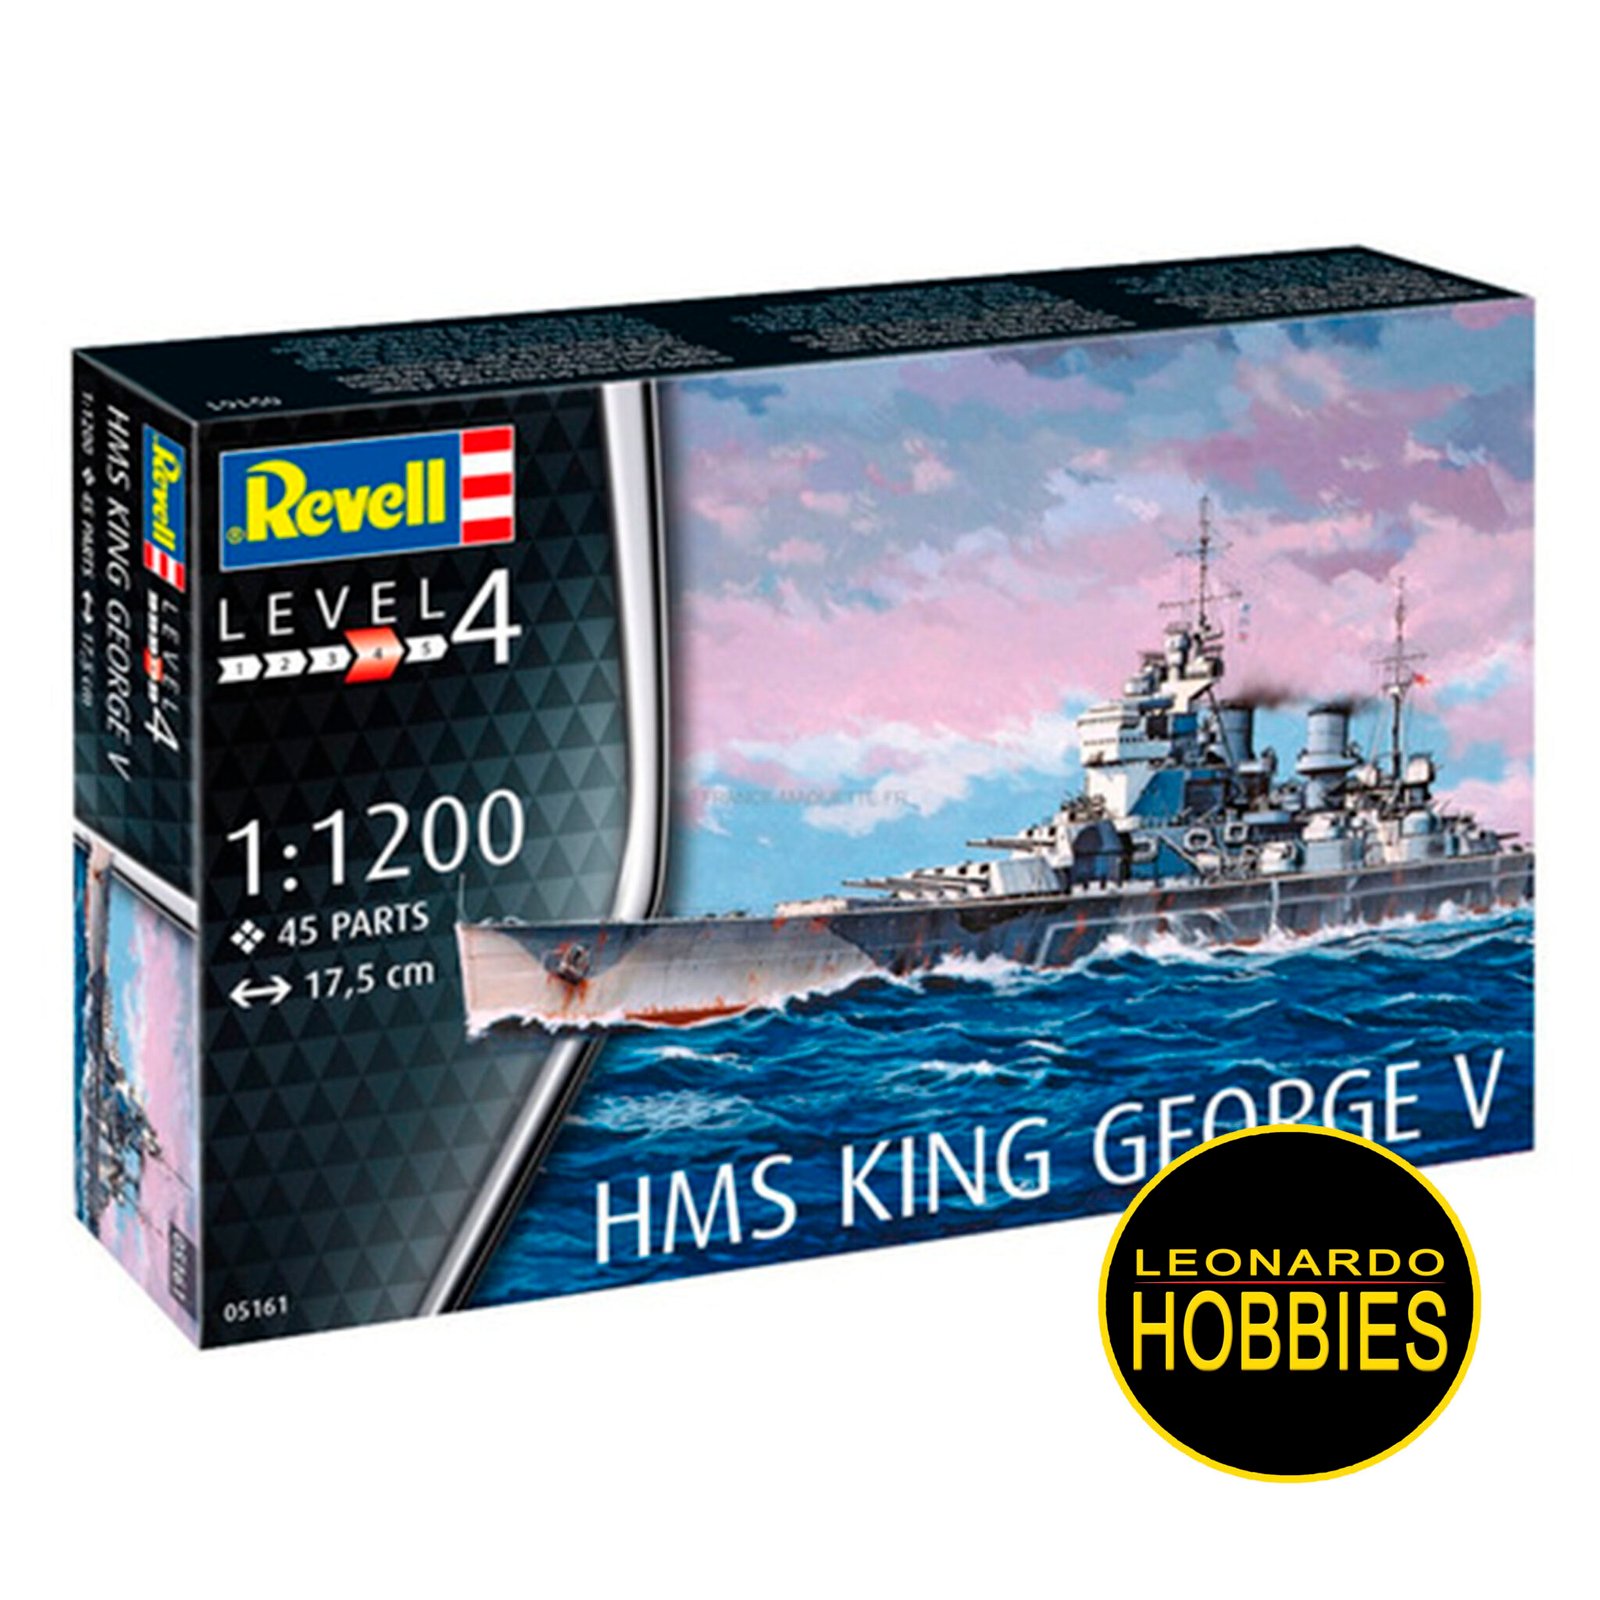 HMS King George V Escala 1/1200 Revell 5161 – Leonardo Hobbies